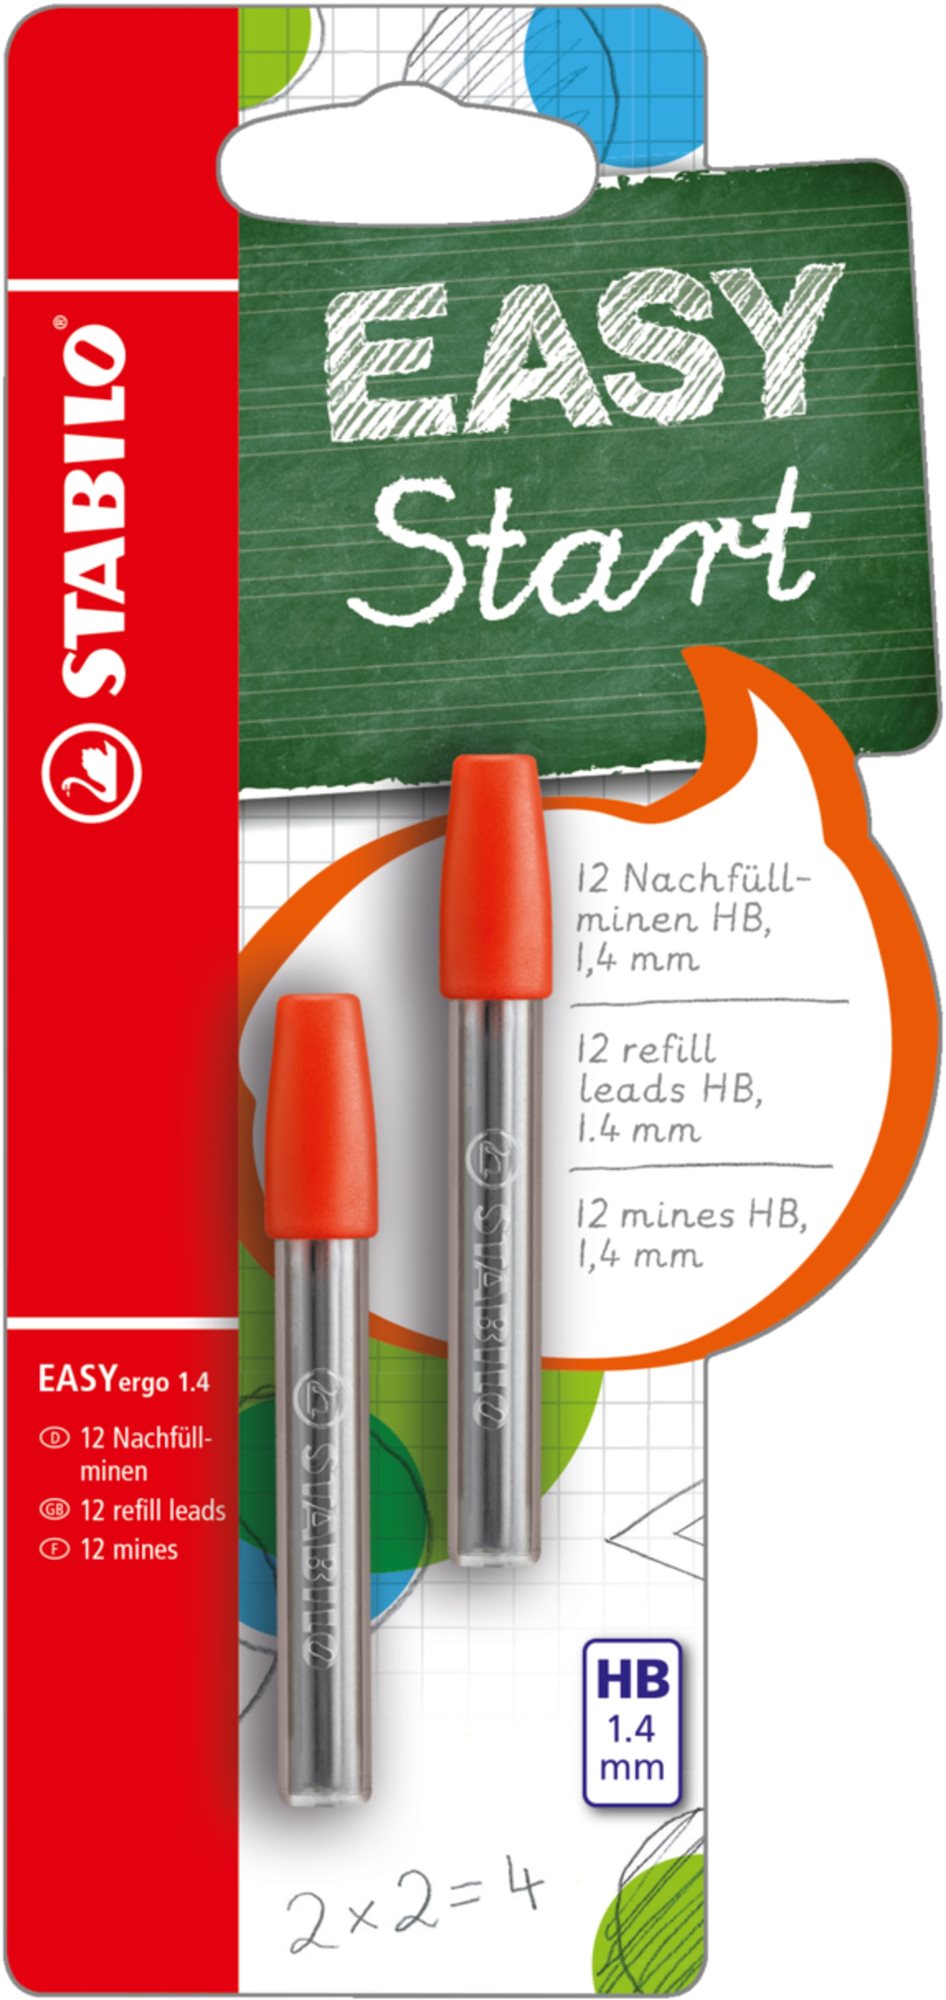 STABILO EASYergo 1.4 mm tartalék ceruzabél műanyag dobozban, 2 x 6 ceruzabél csomagonként